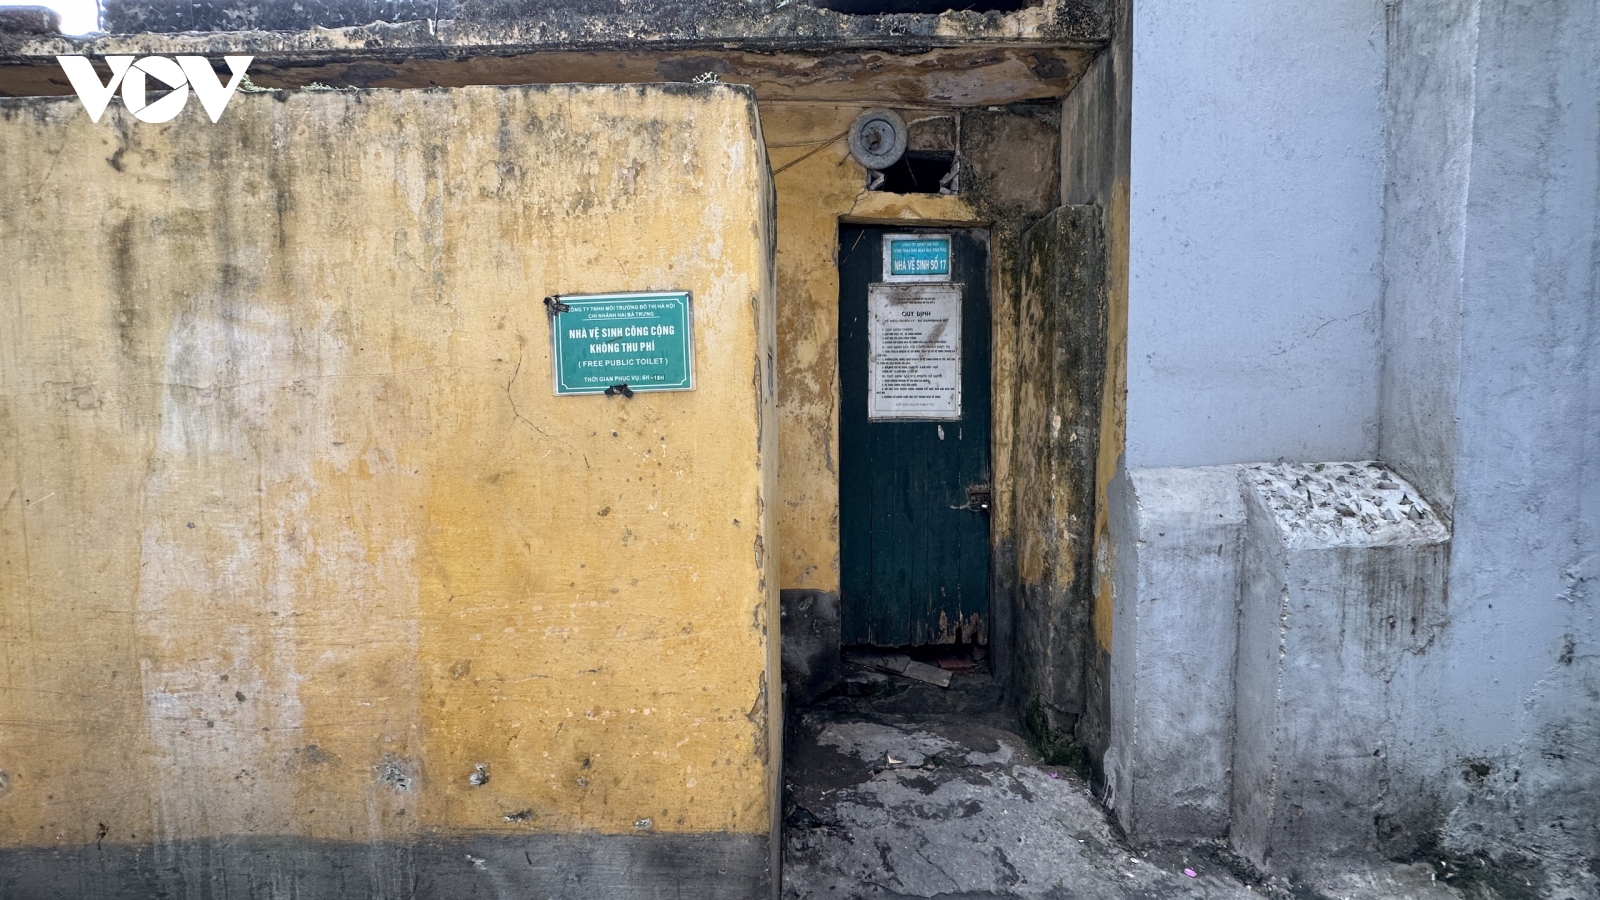 Nhếch nhác nhà vệ sinh công cộng giữa trung tâm Hà Nội